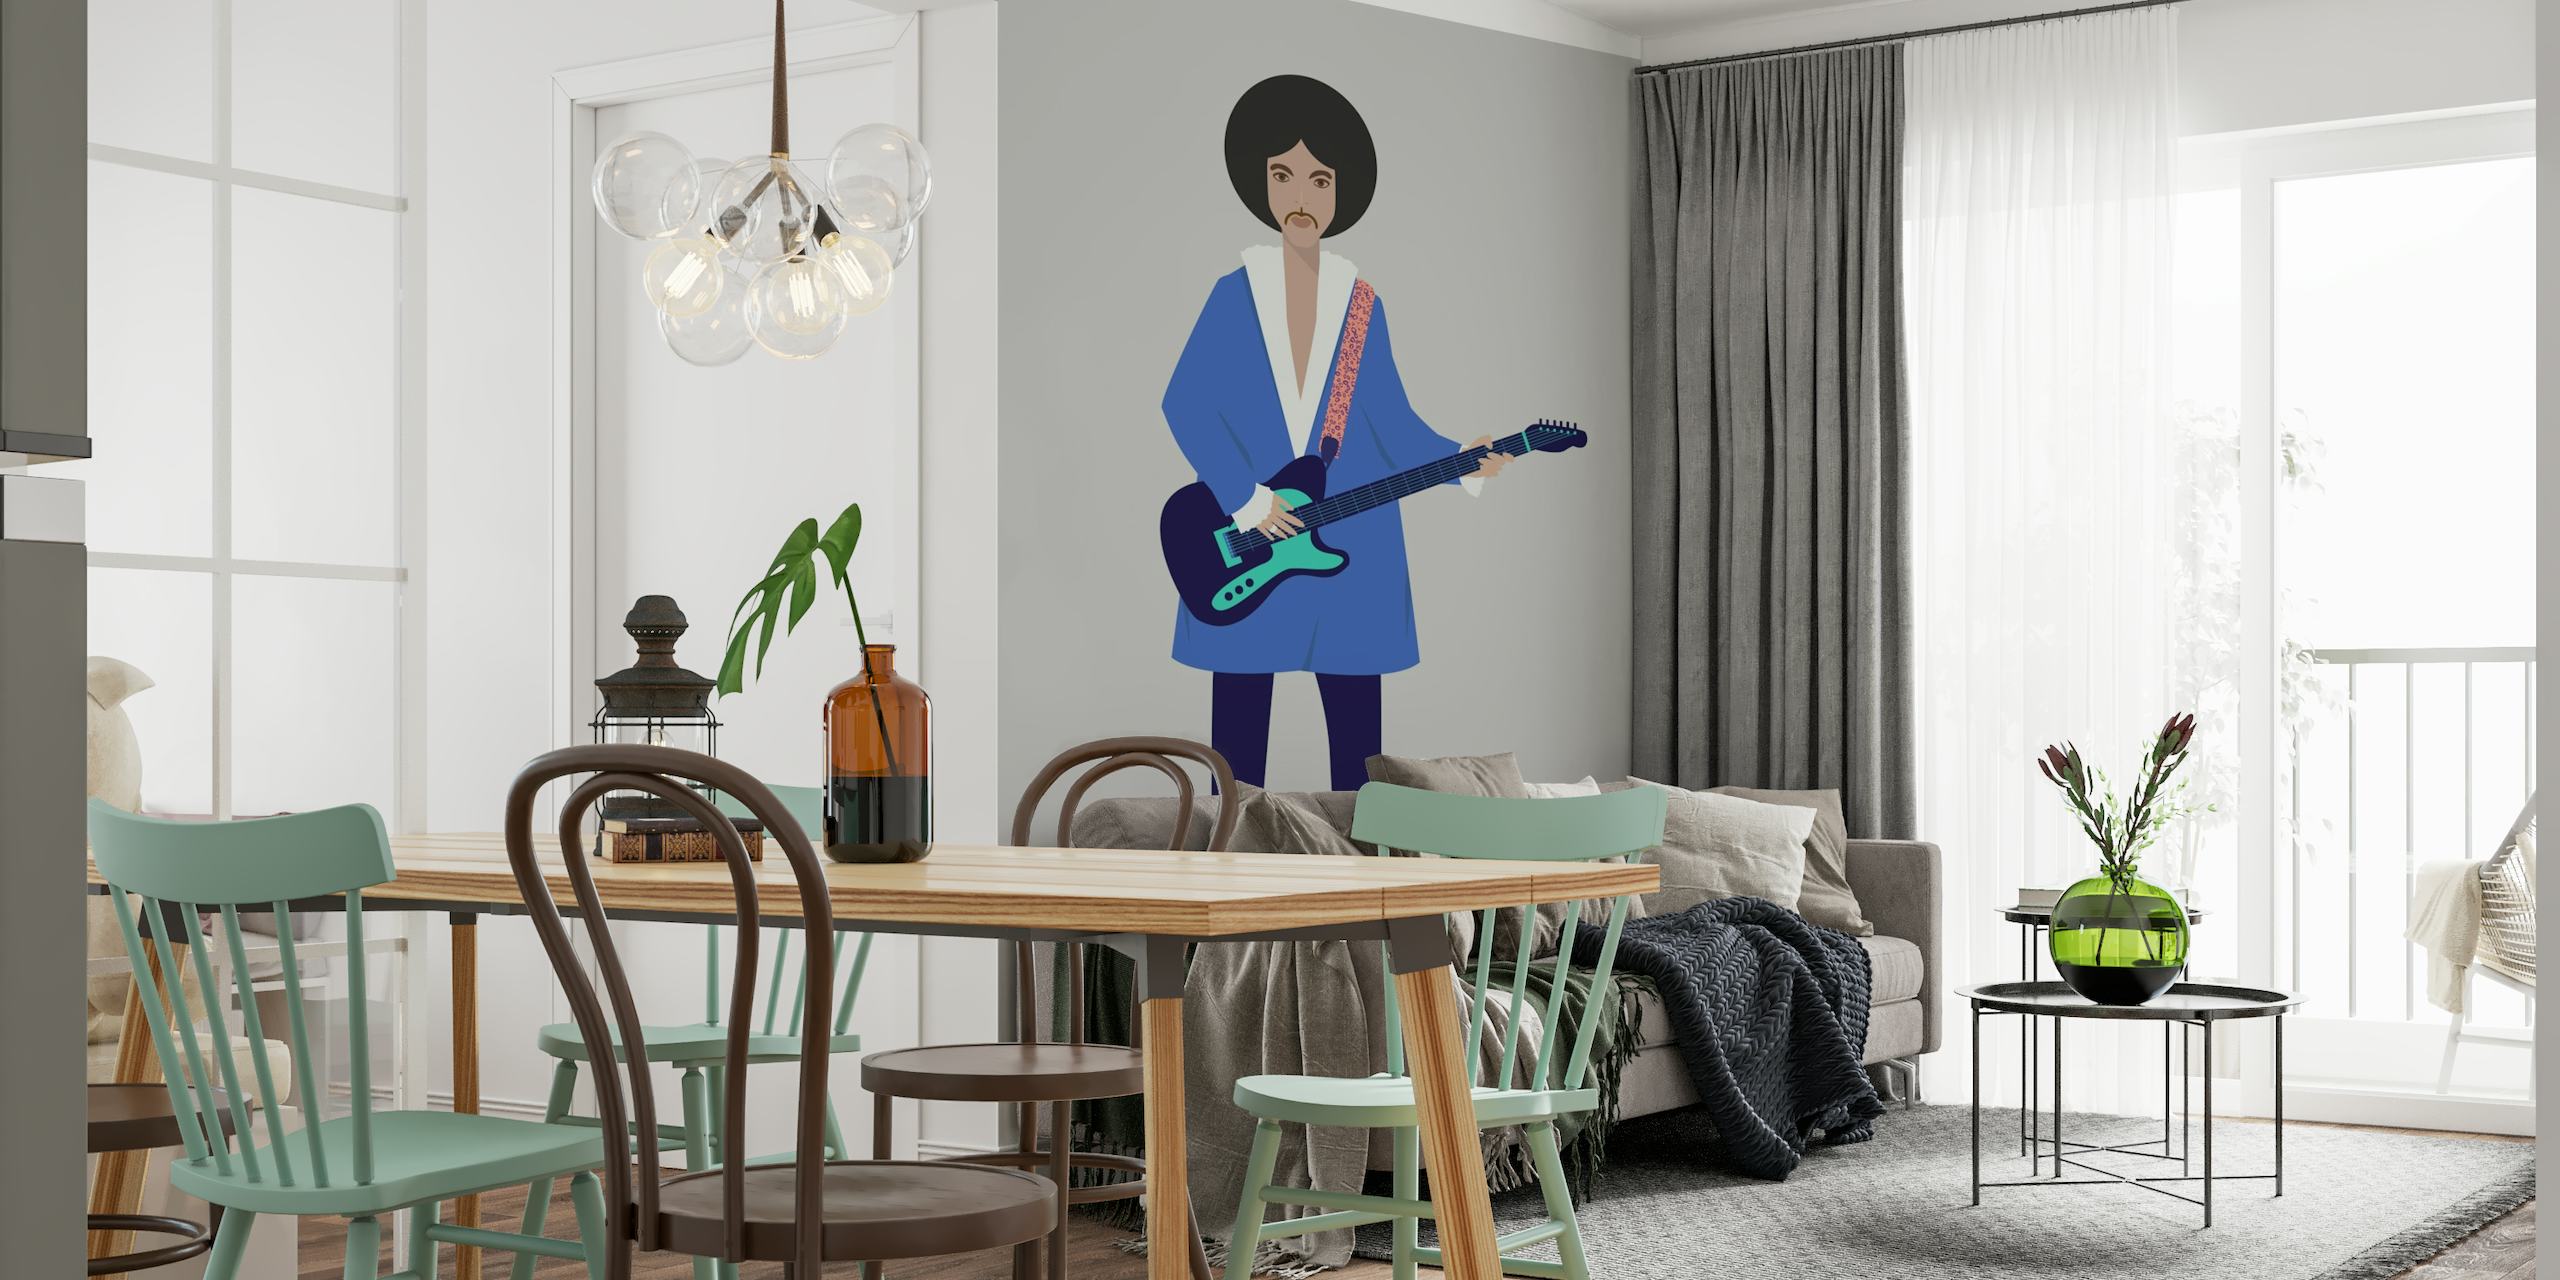 Illustrativt vægmaleri af en person med en guitar, med et moderne kunstnerisk design